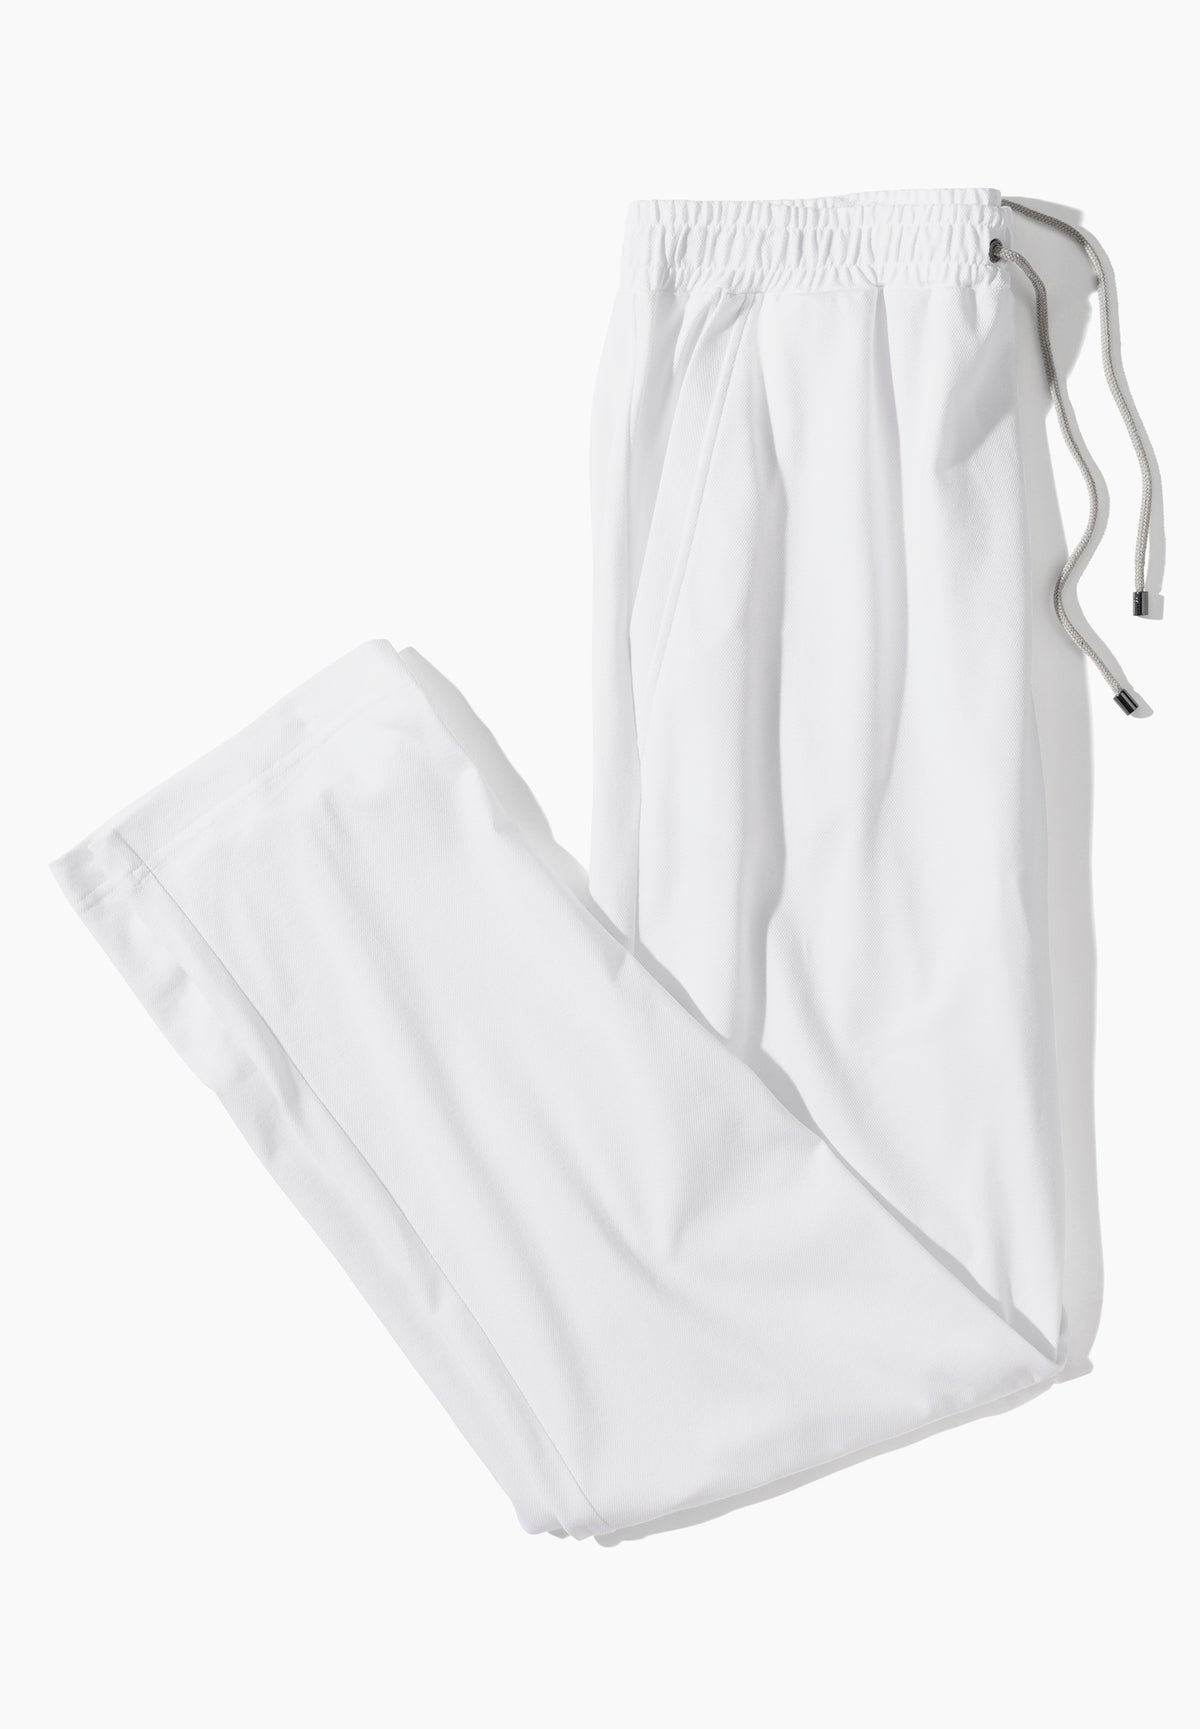 Piqué Lounge | Pants Long - white